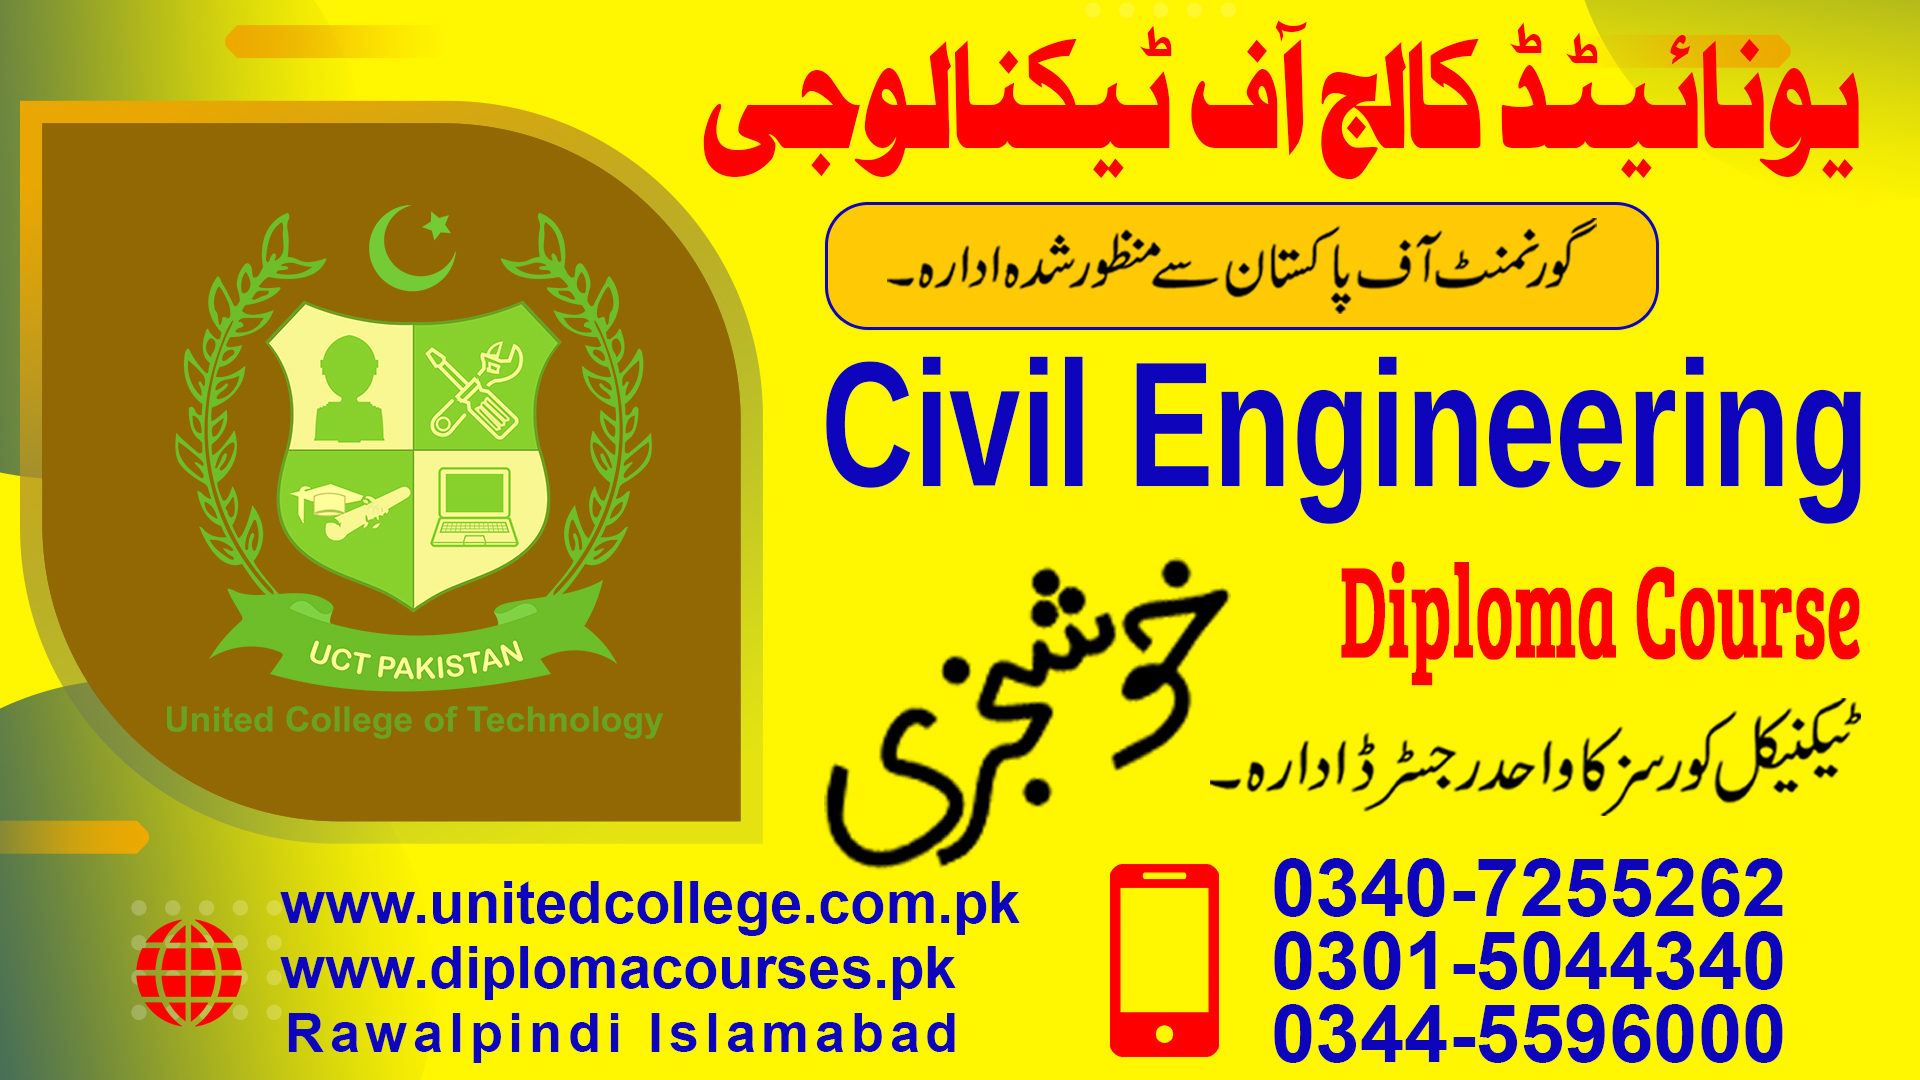 CIVIL ENGINEERING COURSE IN RAWALPINDI ISLAMABAD PAKISTAN